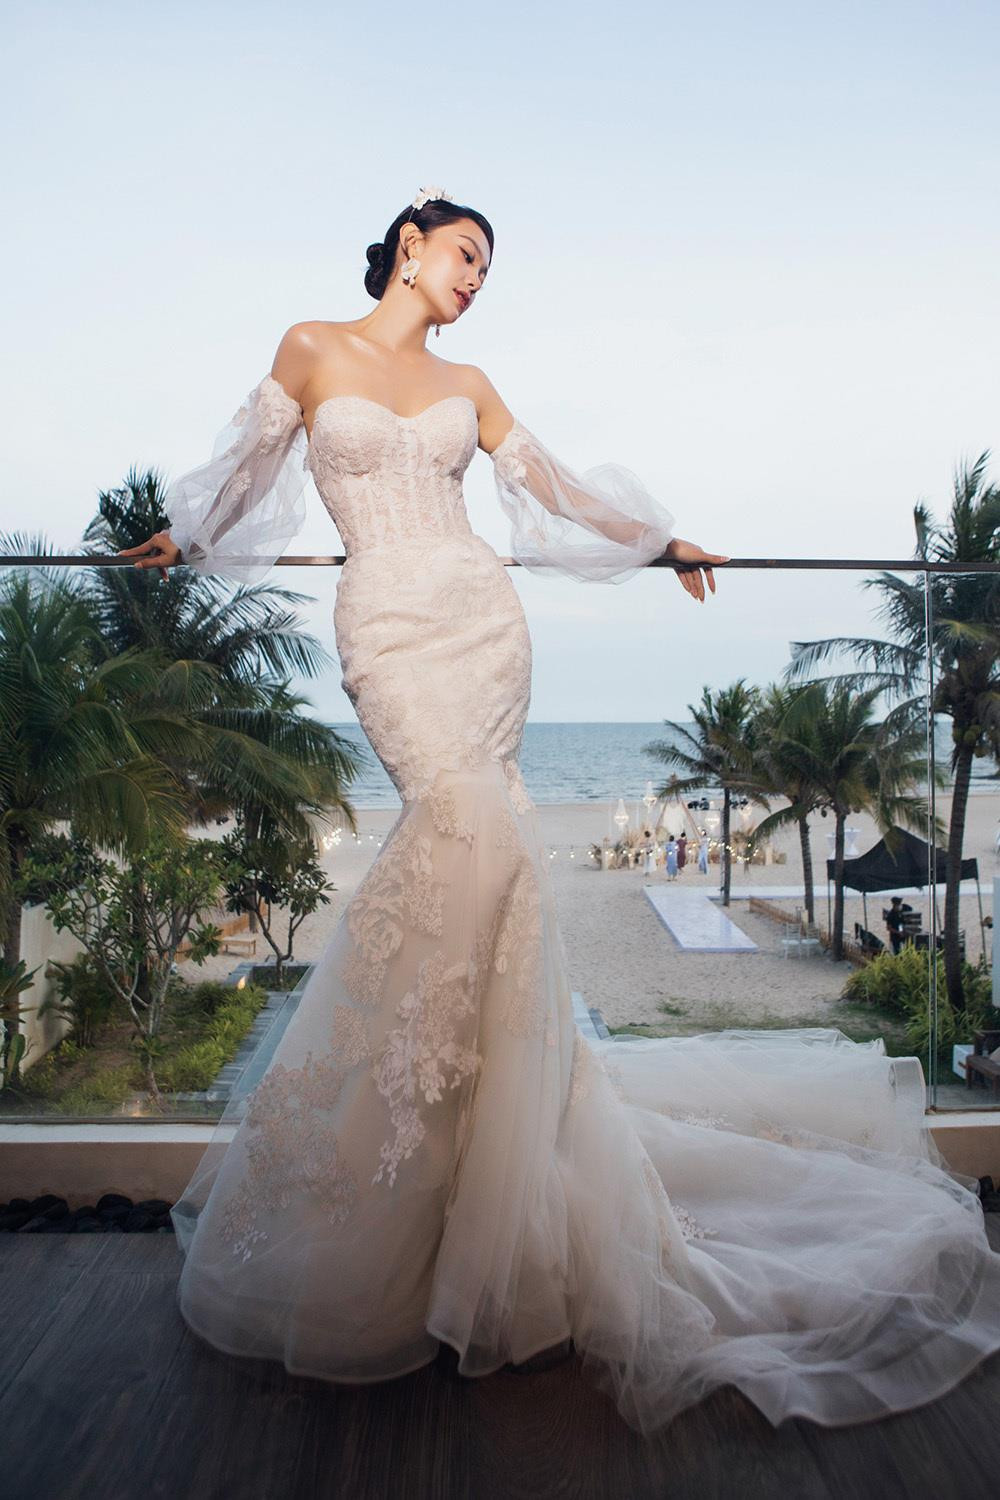 Giá trị 2 bộ váy cưới lộng lẫy Minh Hằng mặc trong hôn lễ - 3